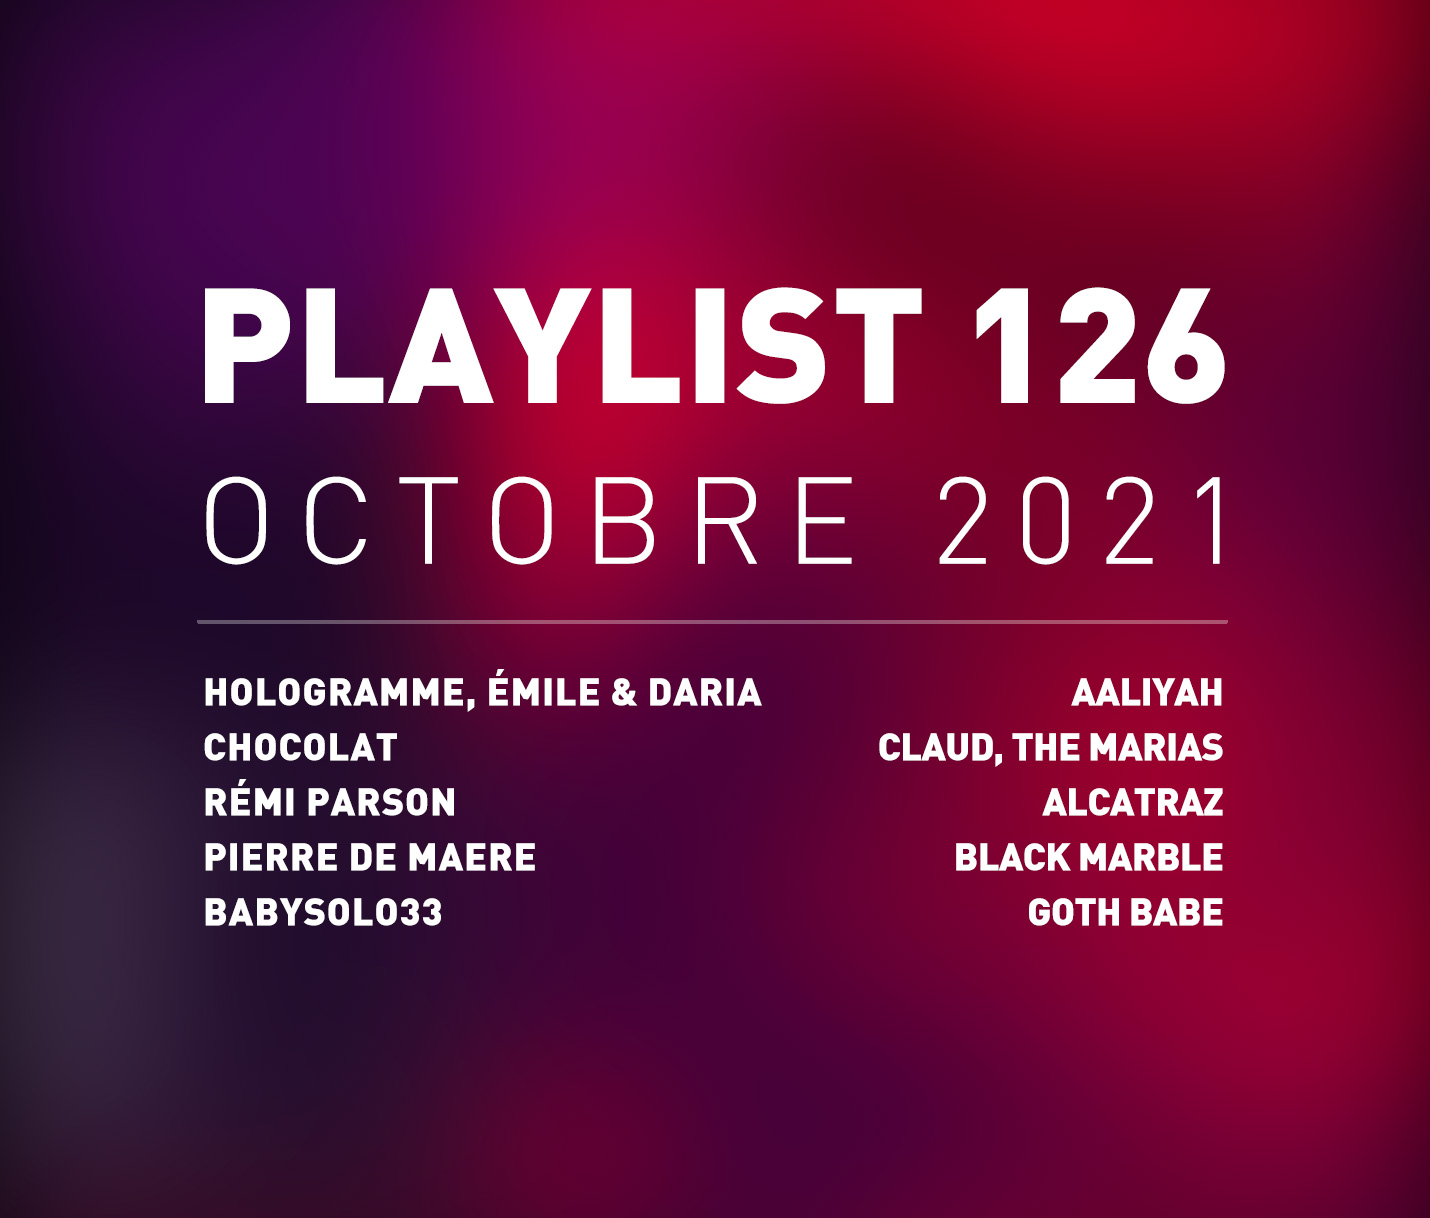 Playlist 126 : RÃ©mi Parson, Pierre de Maere, Aaliyah, Babysolo33, etc.